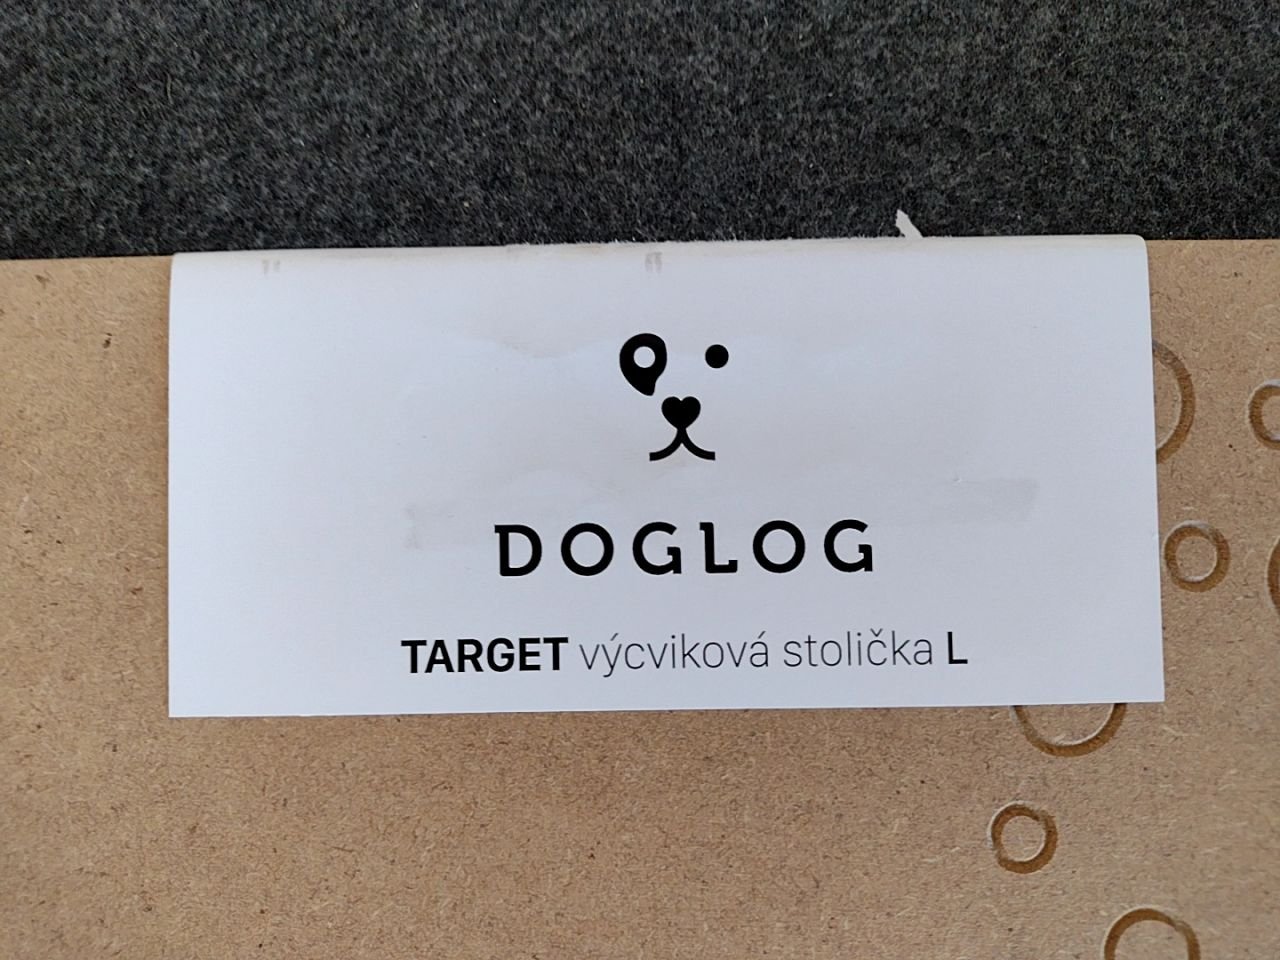 Výcviková stolička pro psy target Doglog vel. L, 2 ks